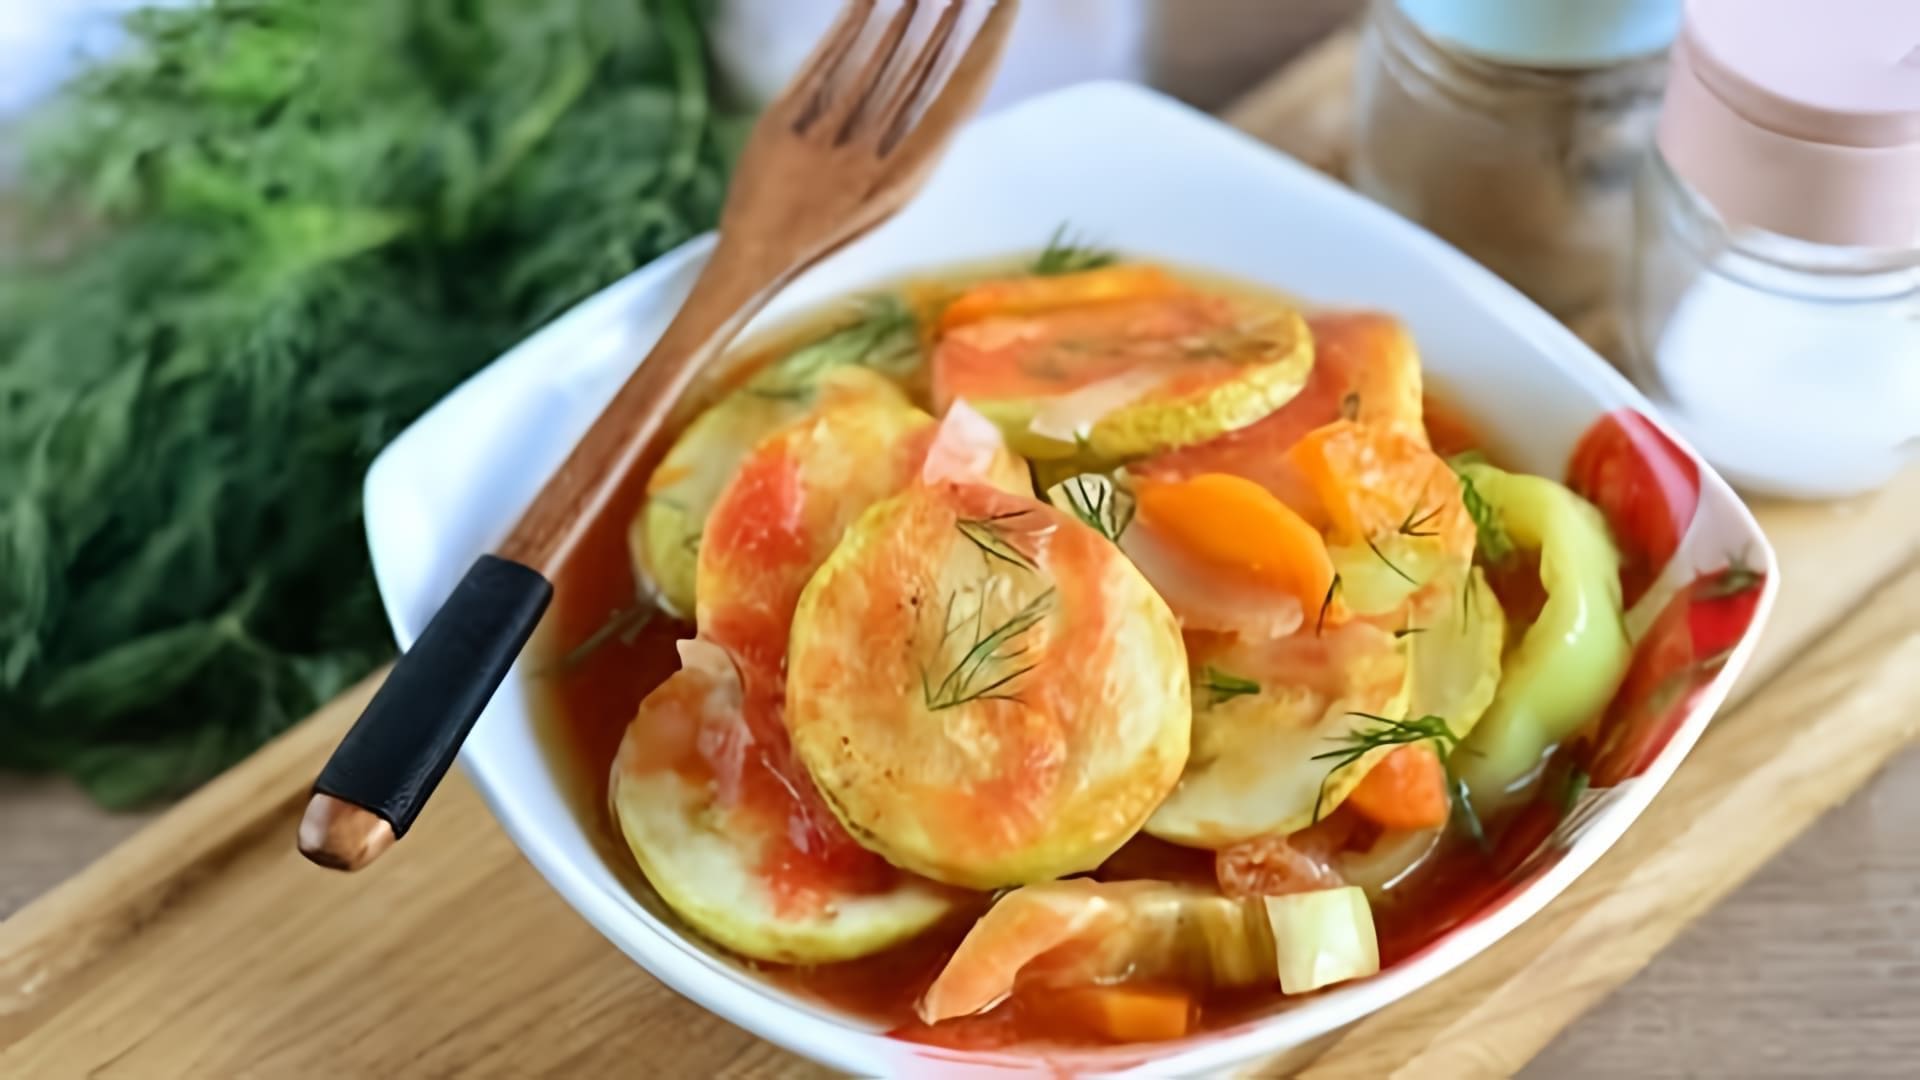 В этом видео демонстрируется процесс приготовления овощей тушеных в томатном соусе